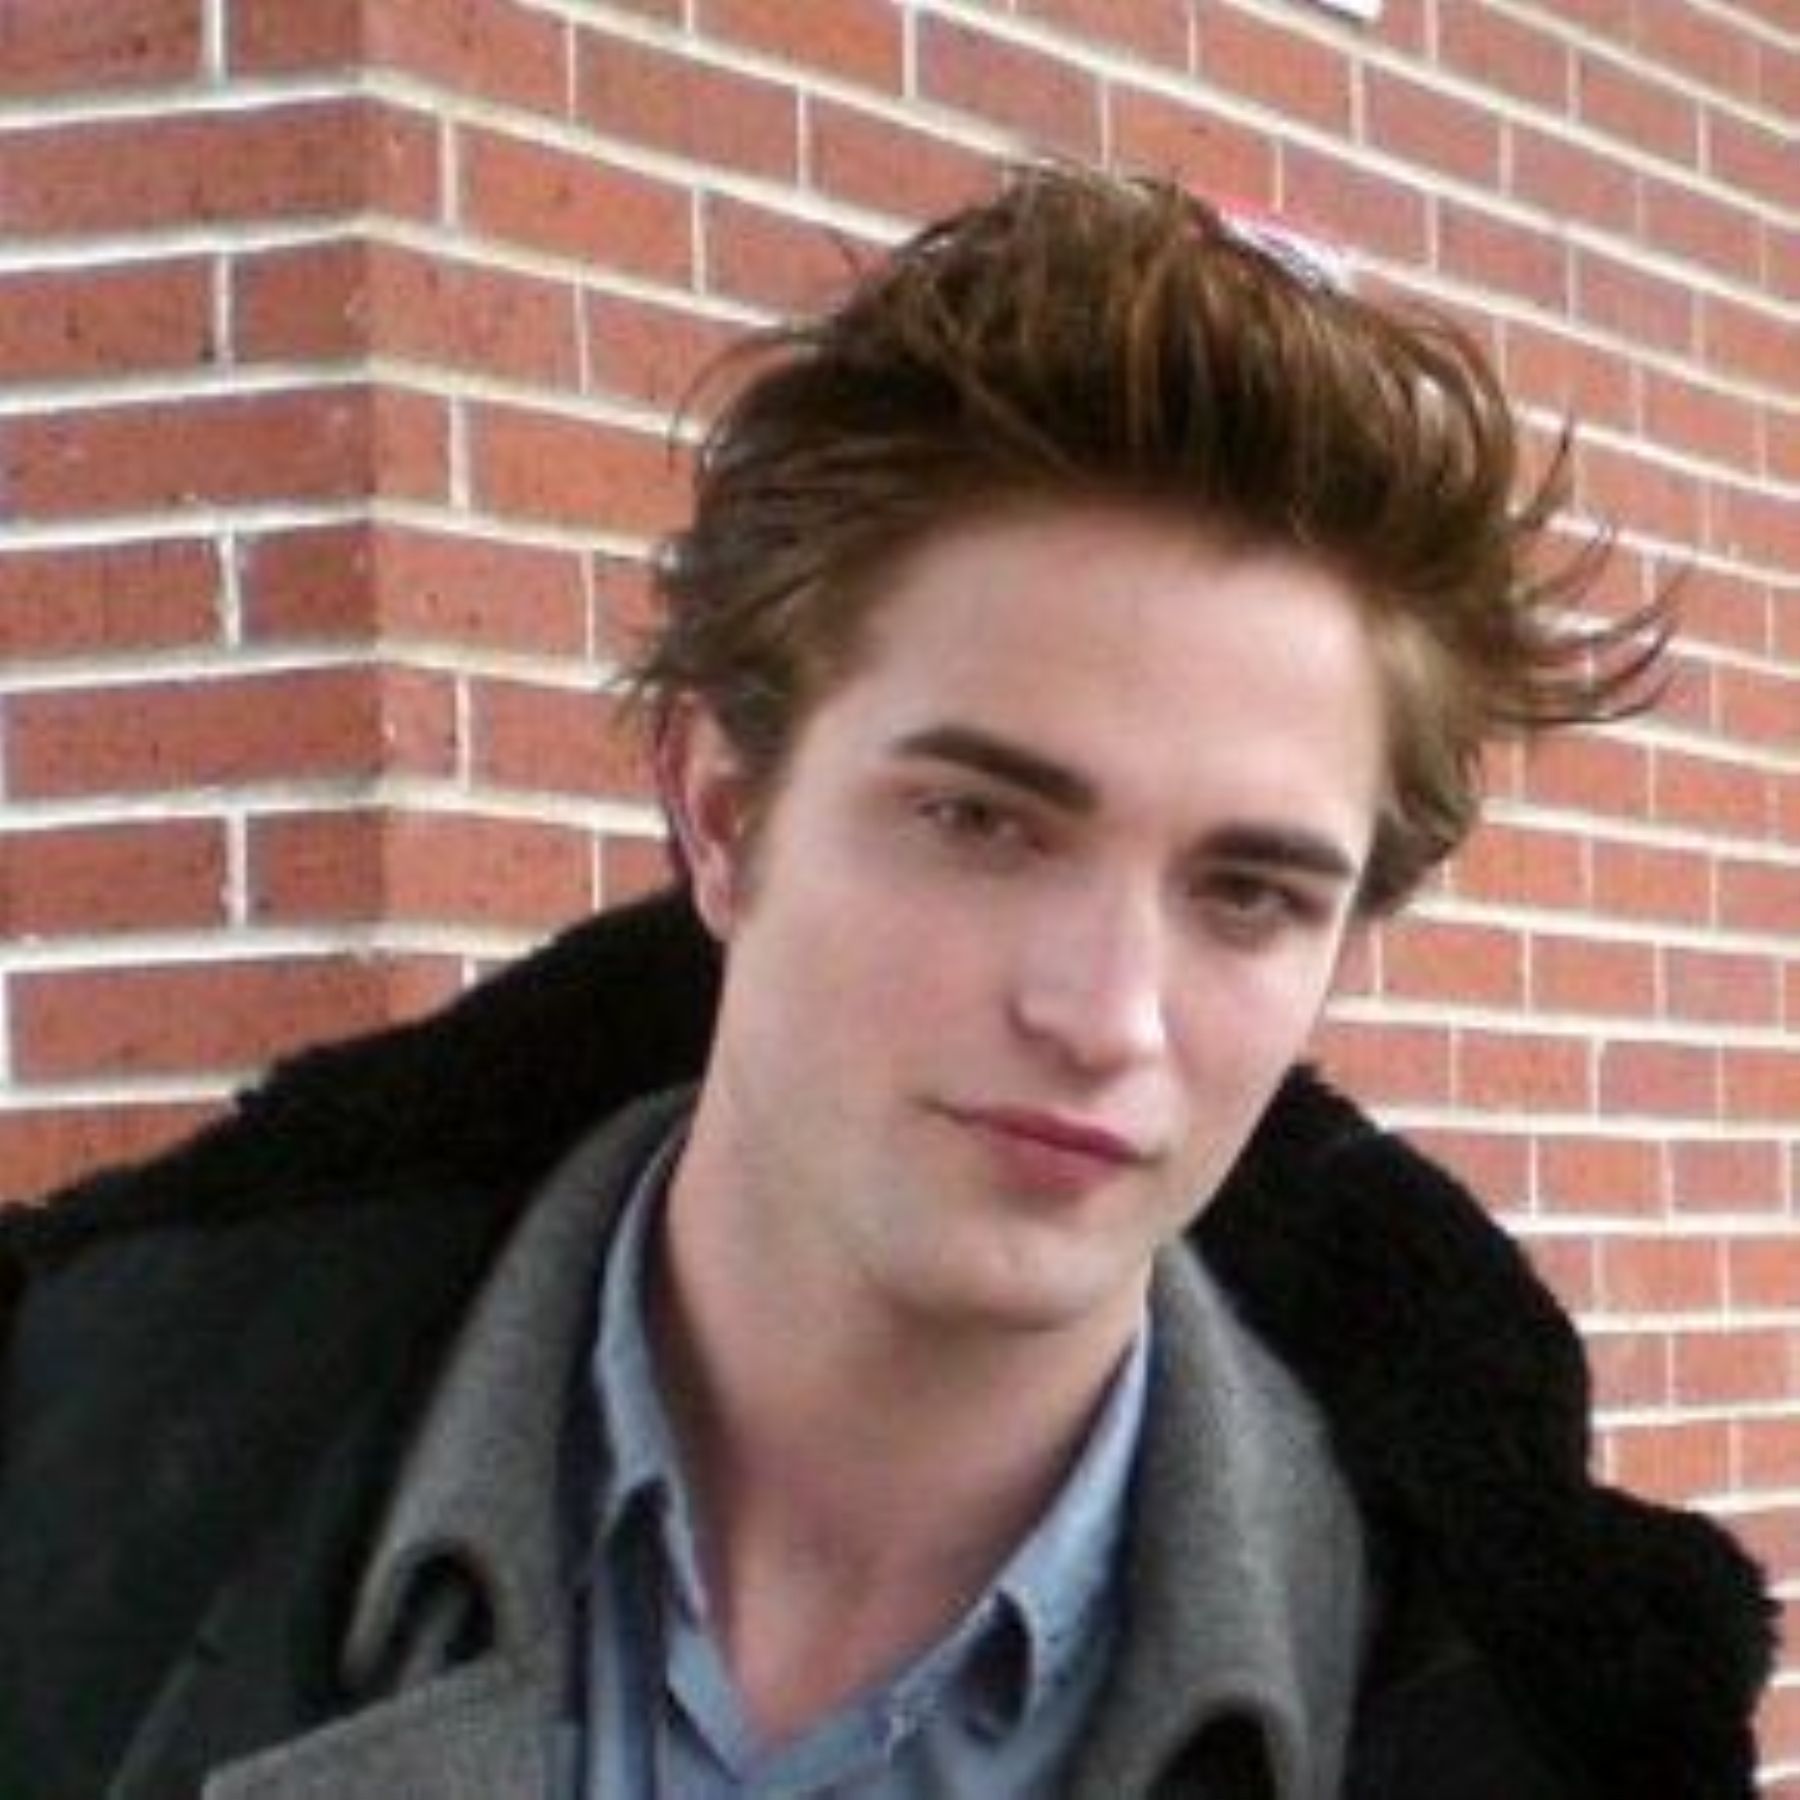 Robert Pattinson, el actor "vampiro" de la saga de Crepúsculo, Luna Nueva.